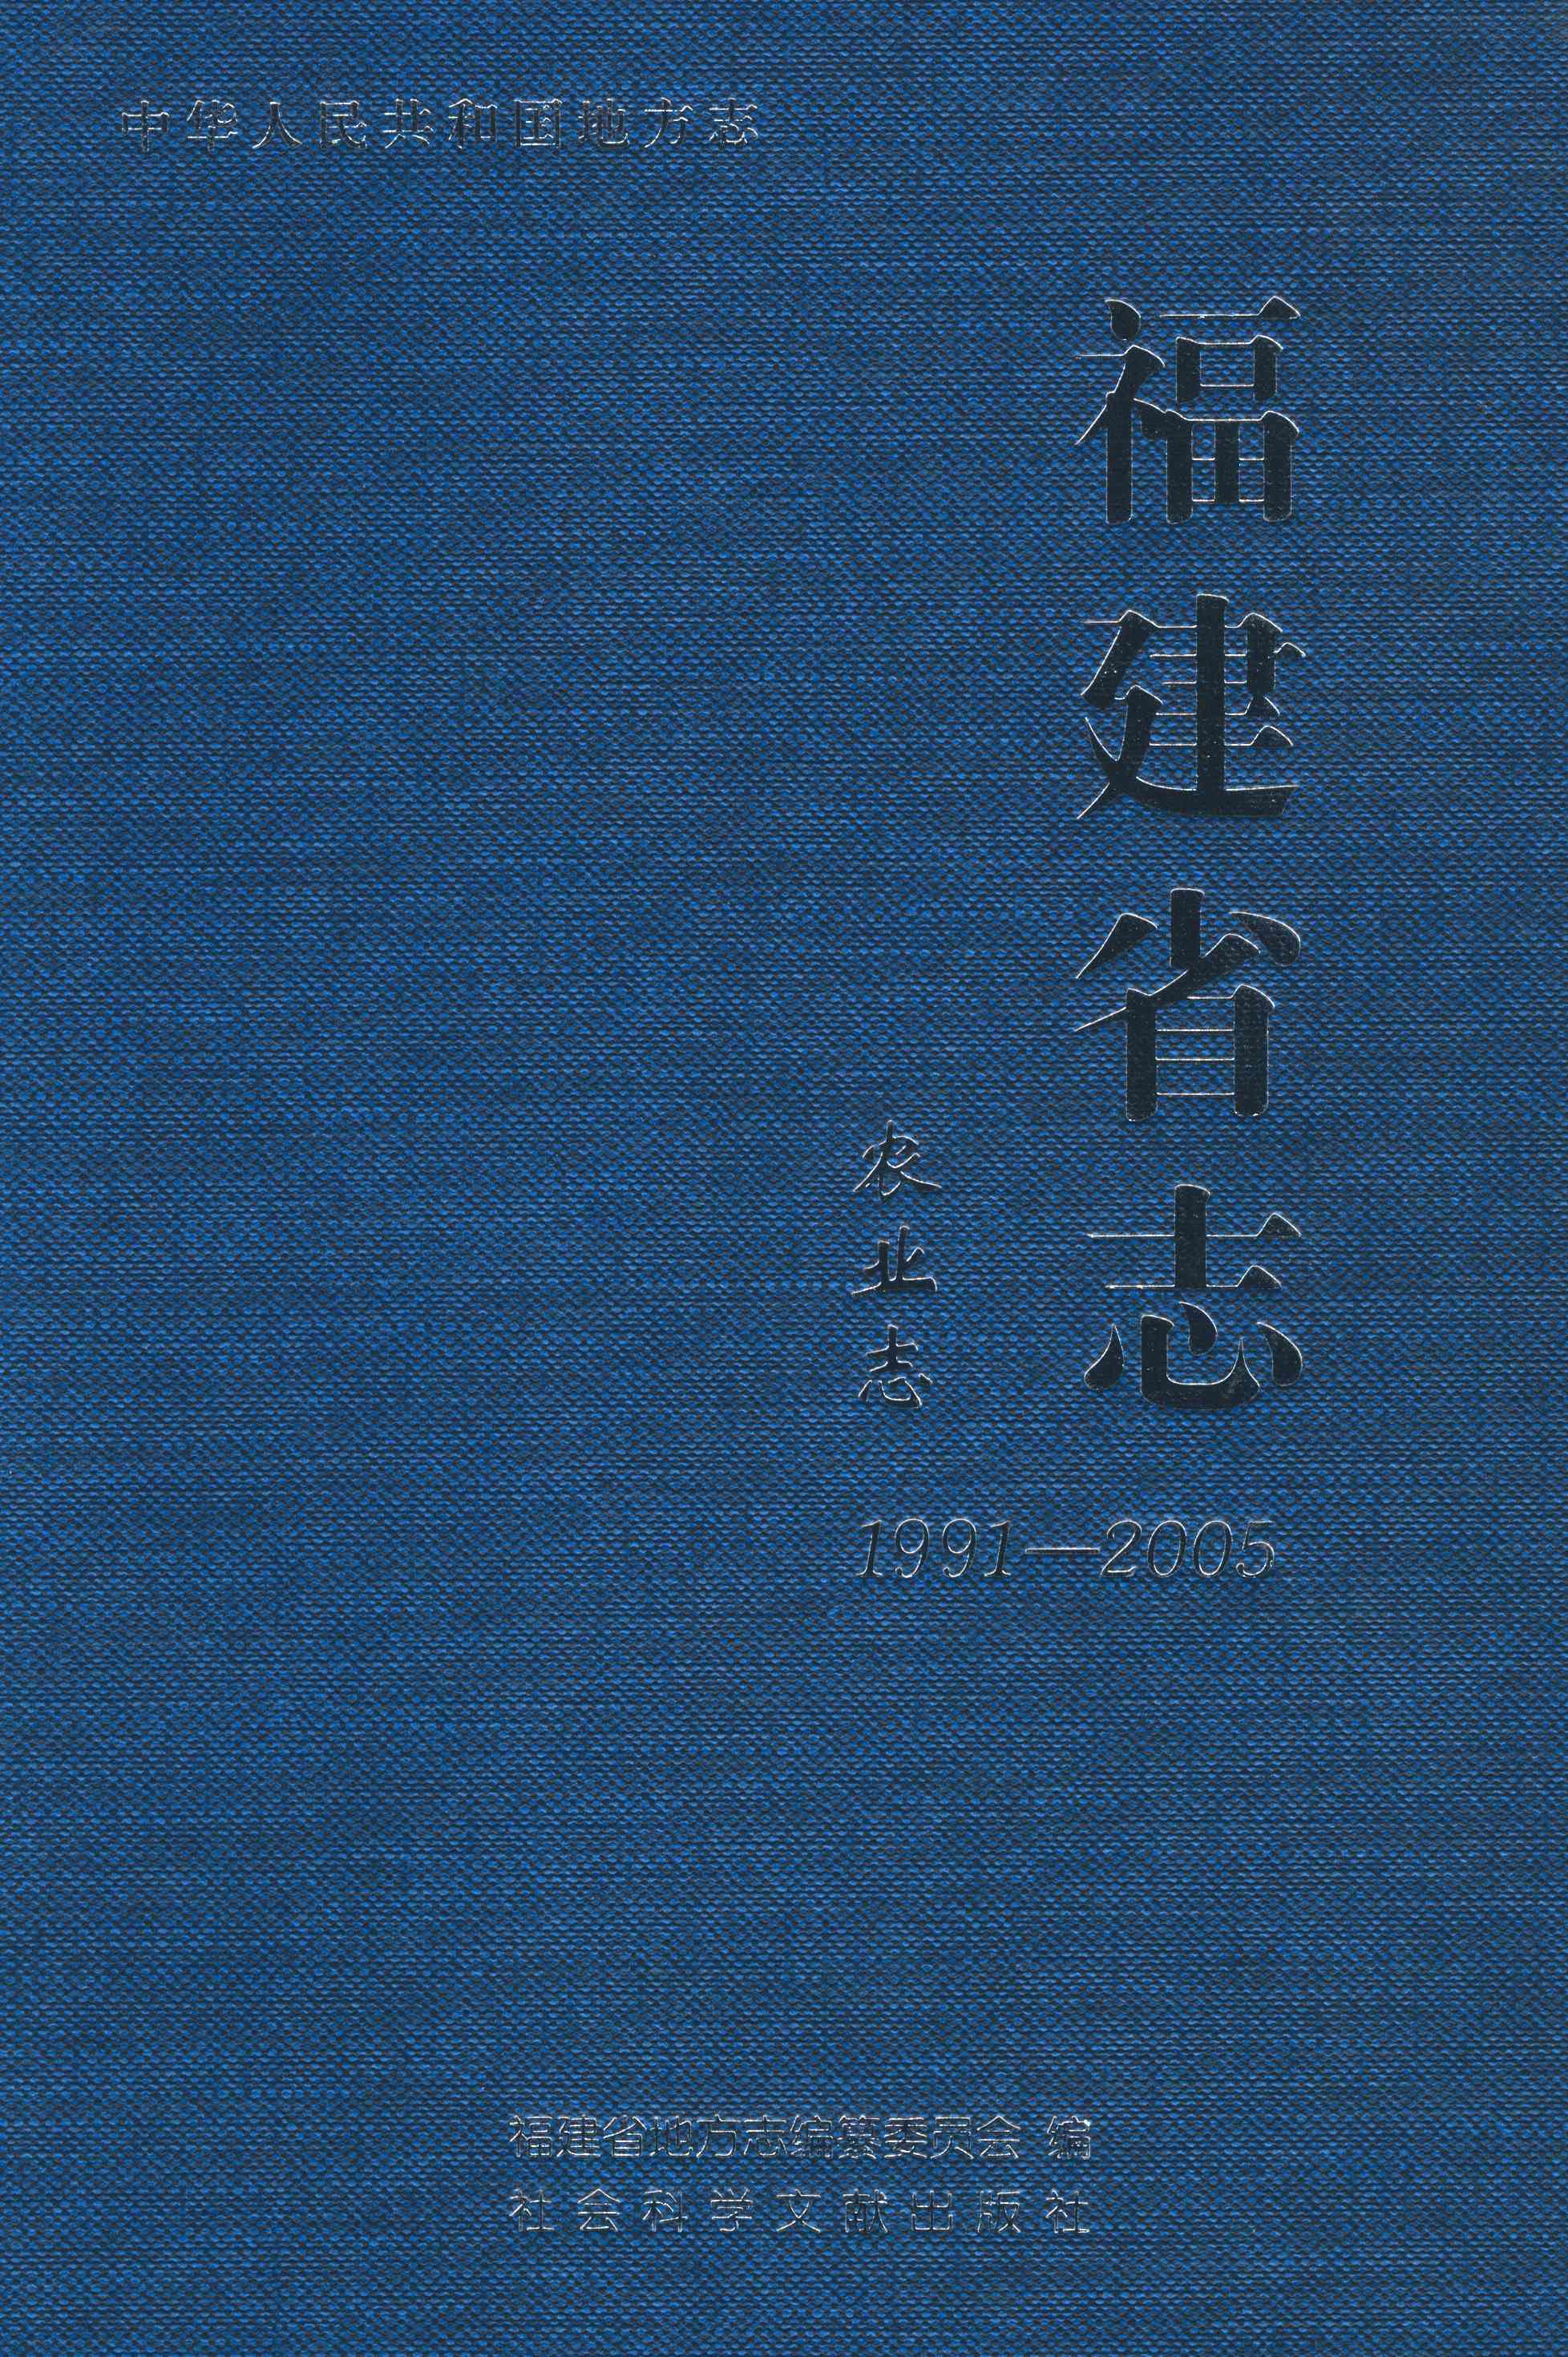 福建省志·农业志1991-2005